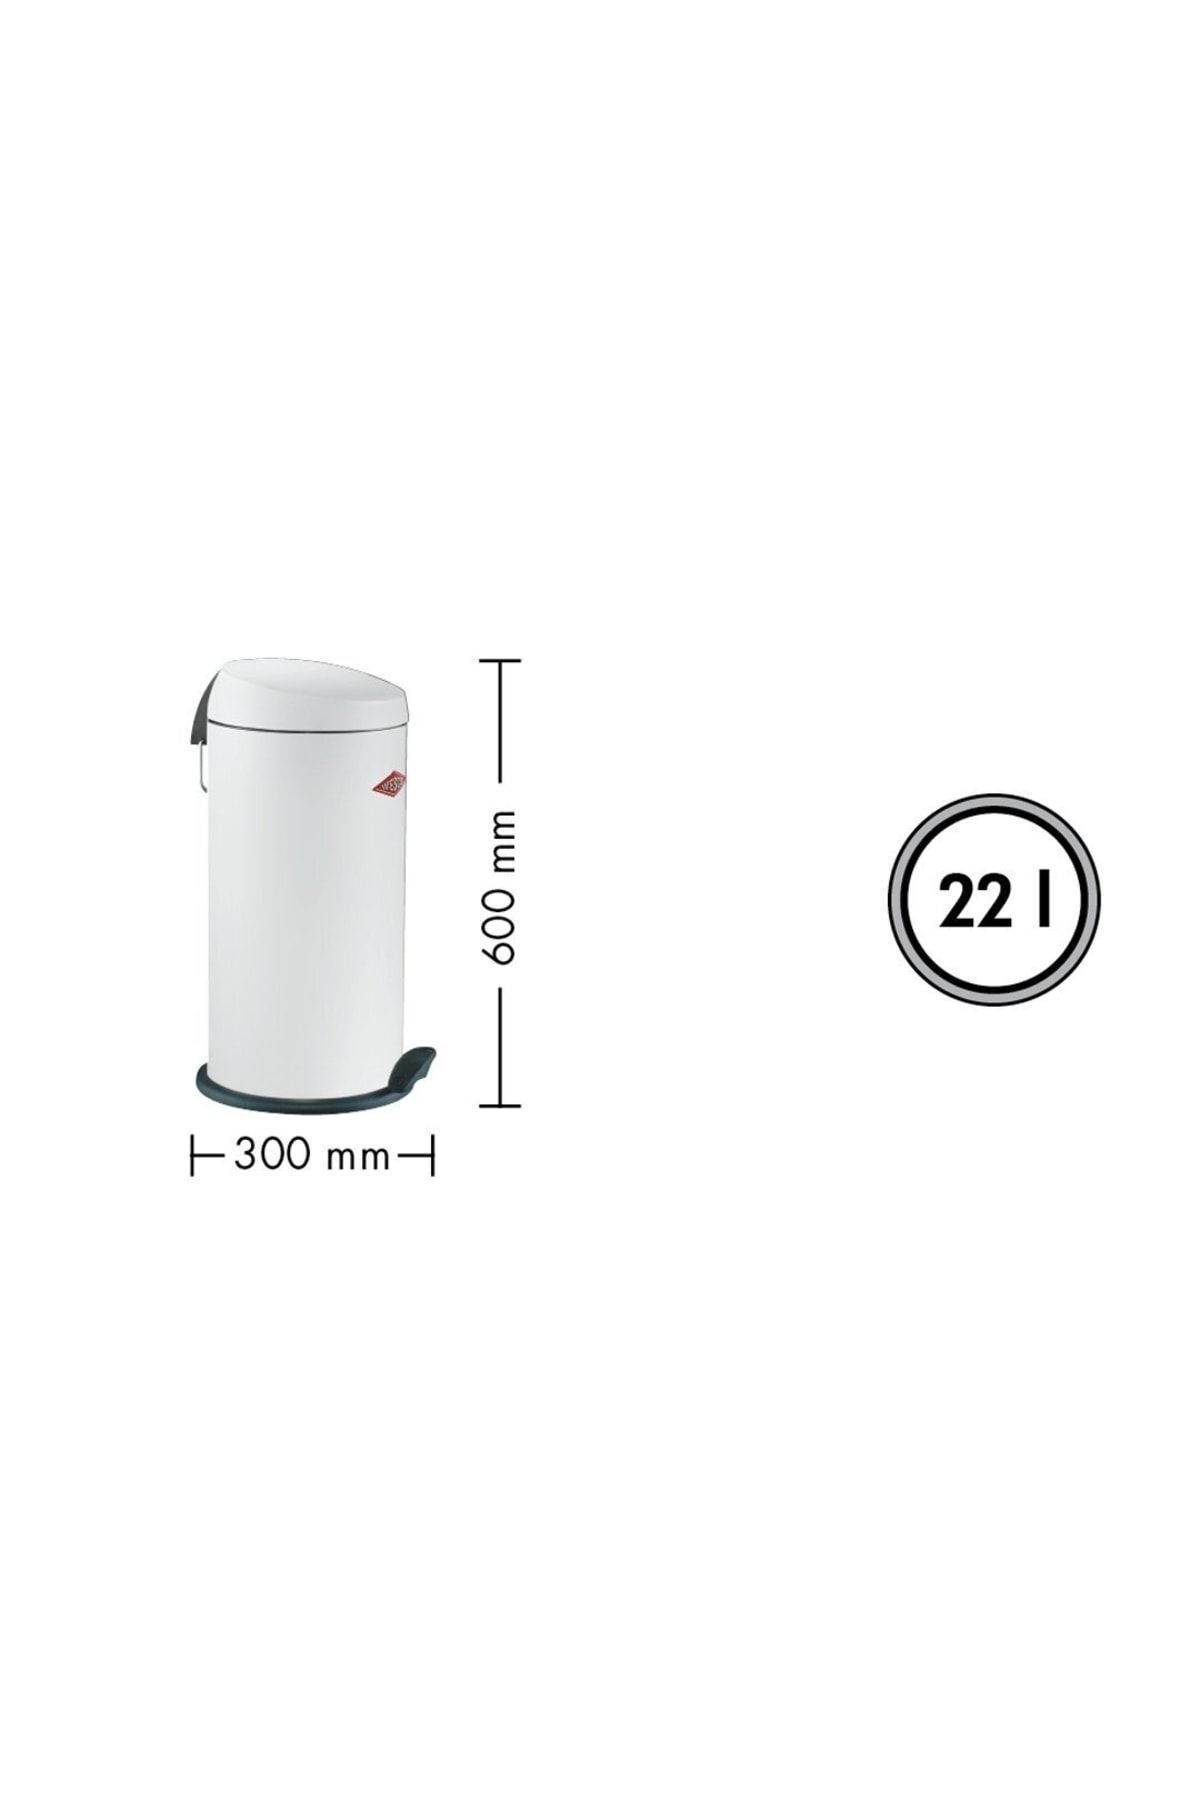 Yeni Gümüş-Capboy Maxi 22  LitrePedallı Çöp Kutusu(300x600mm)